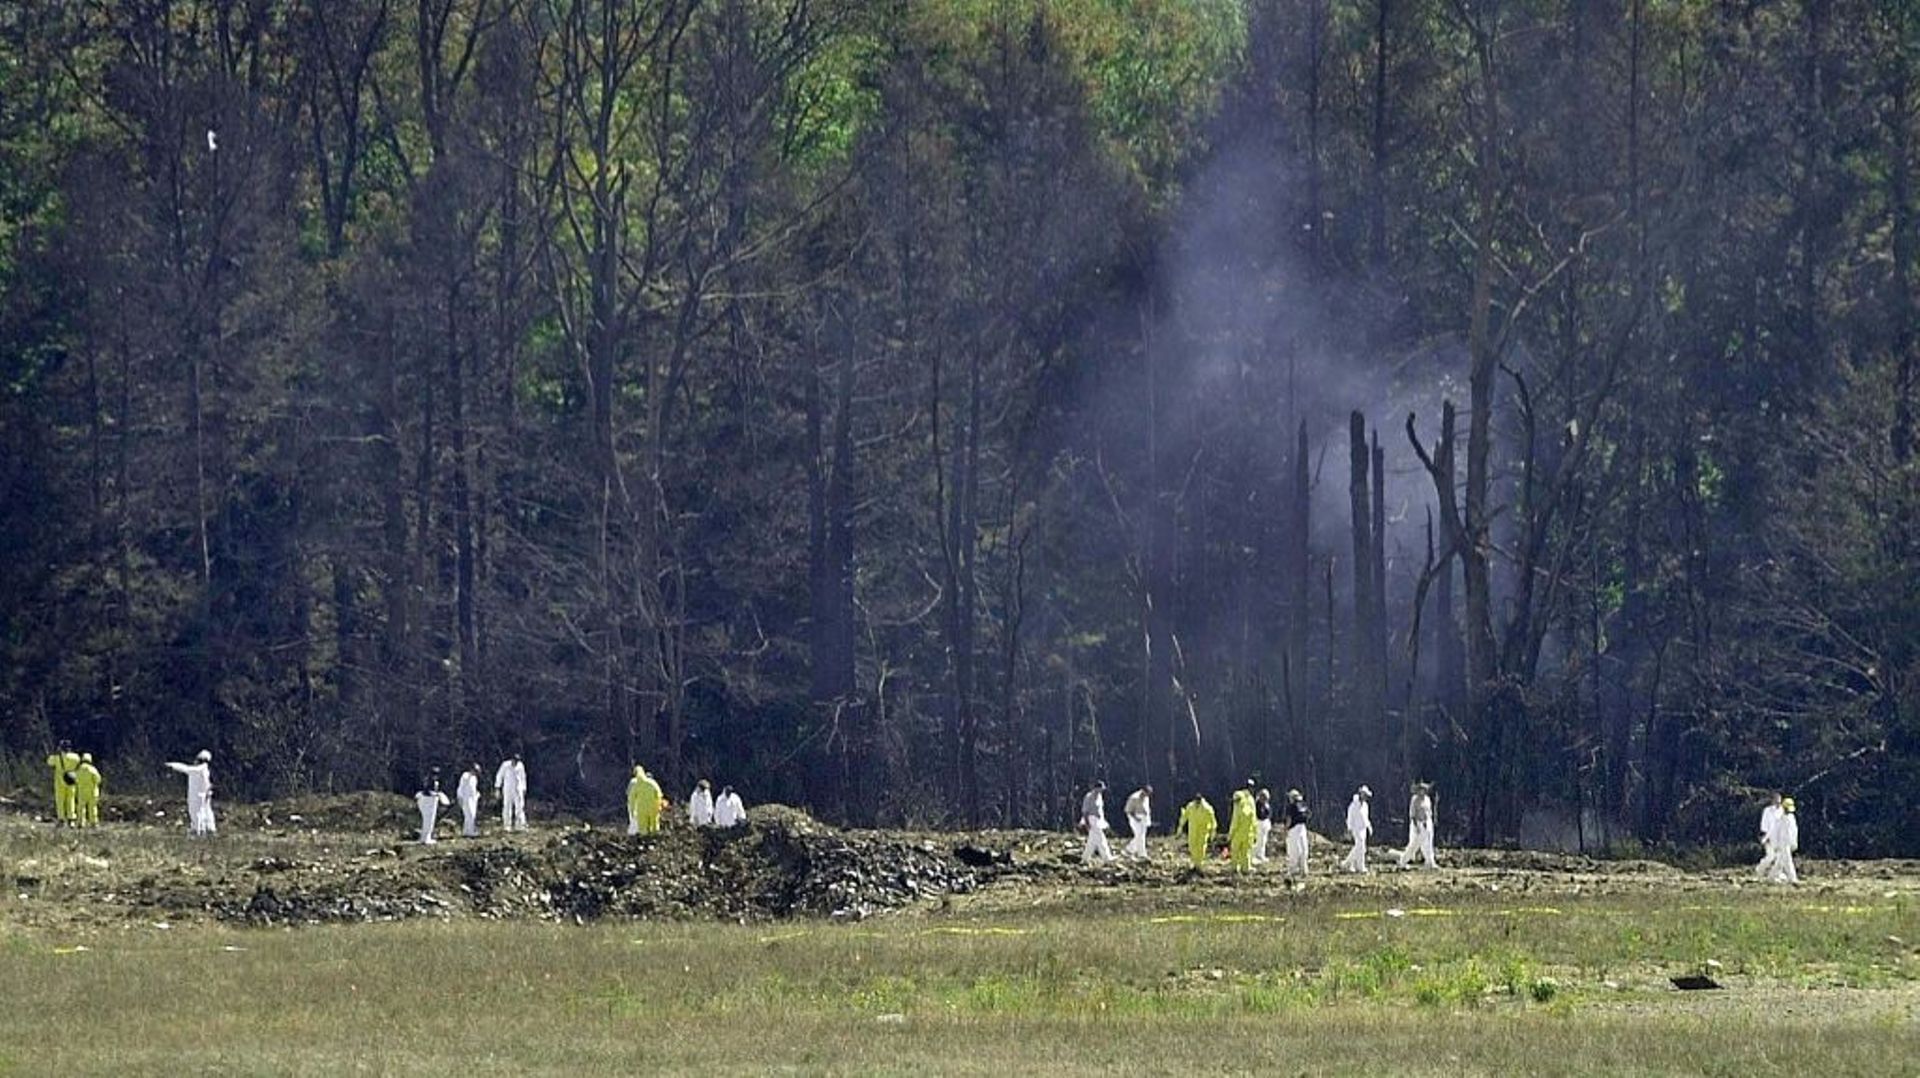 Des enquêteurs sur le site de Shanksville, en Pennsylvanie, le 12 septembre 2001, après que le vol 93 de la compagnie United Airlines s’est écrasé la veille, détourné par des jihadistes